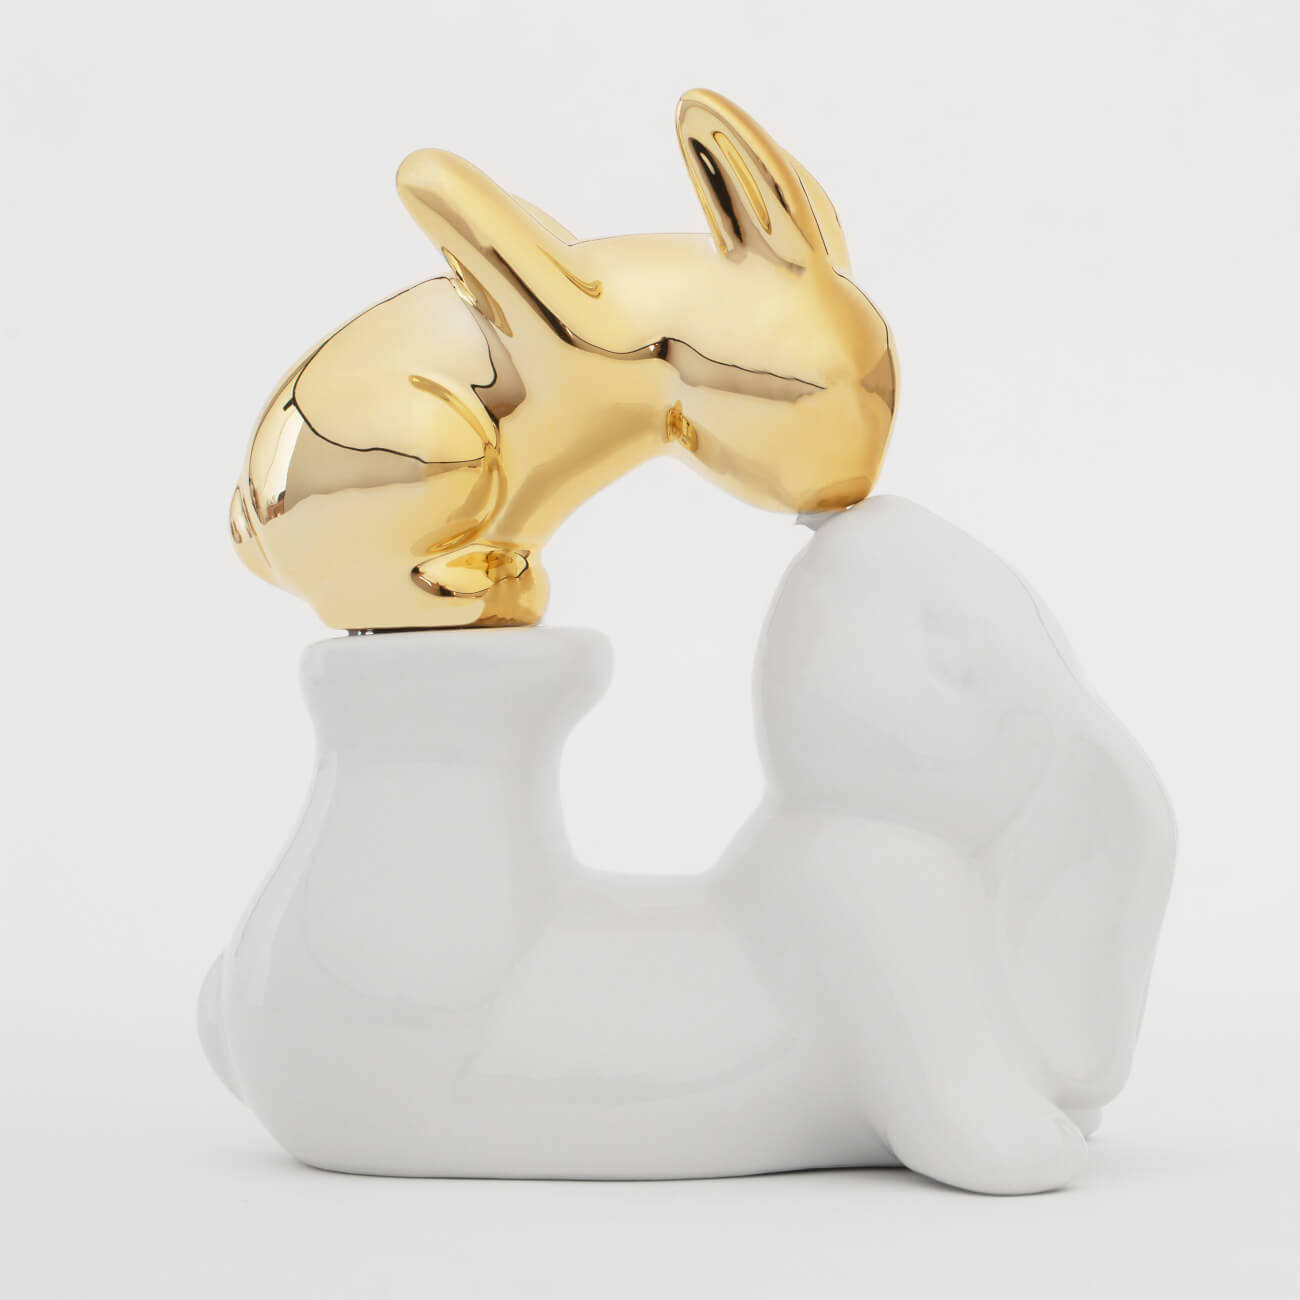 статуэтка ананас бежево золотая керамика 24 см Статуэтка, 14 см, керамика, бело-золотистая, Крольчиха и крольчонок, Easter gold